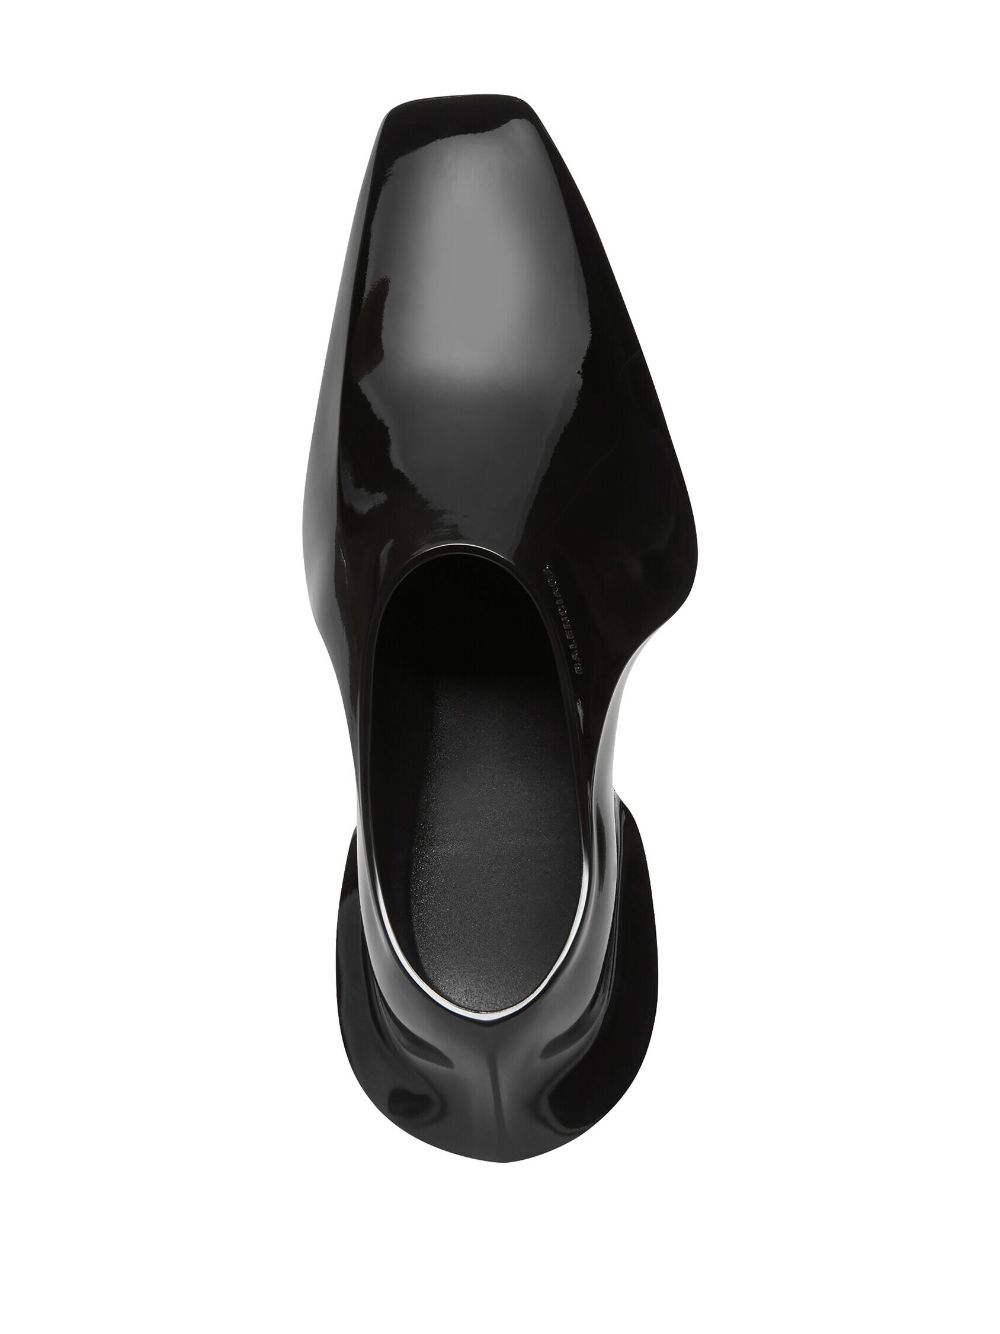 Balenciaga Space sculptural shoes | Smart Closet